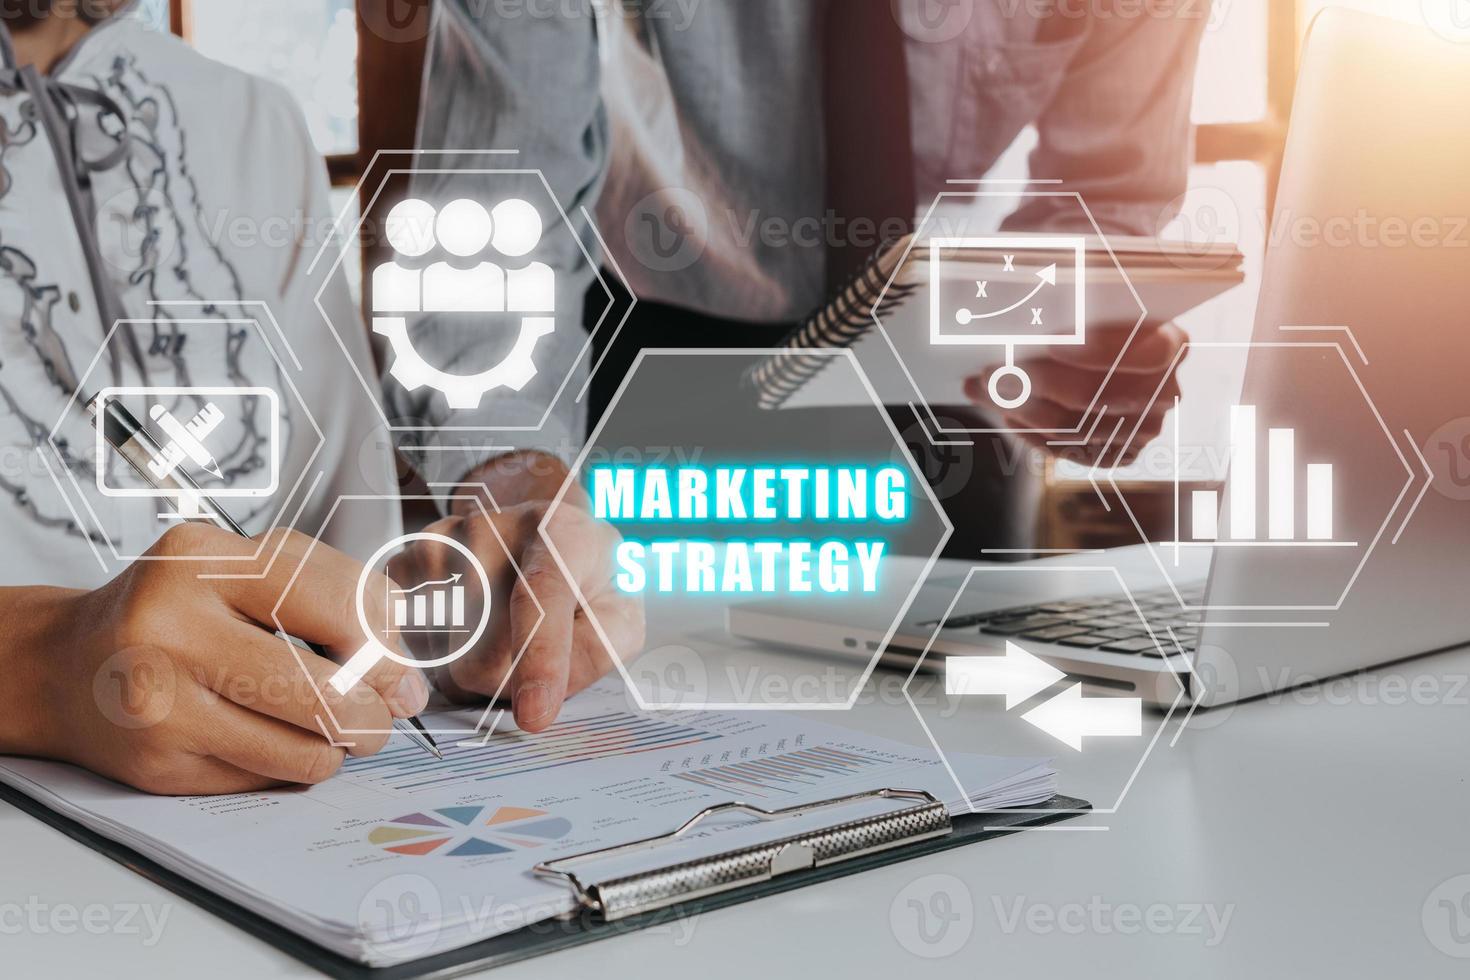 márketing estrategia negocio concepto, negocio equipo personal trabajando con márketing estrategia icono en virtual pantalla, analizar mercado acción, estrategia. foto